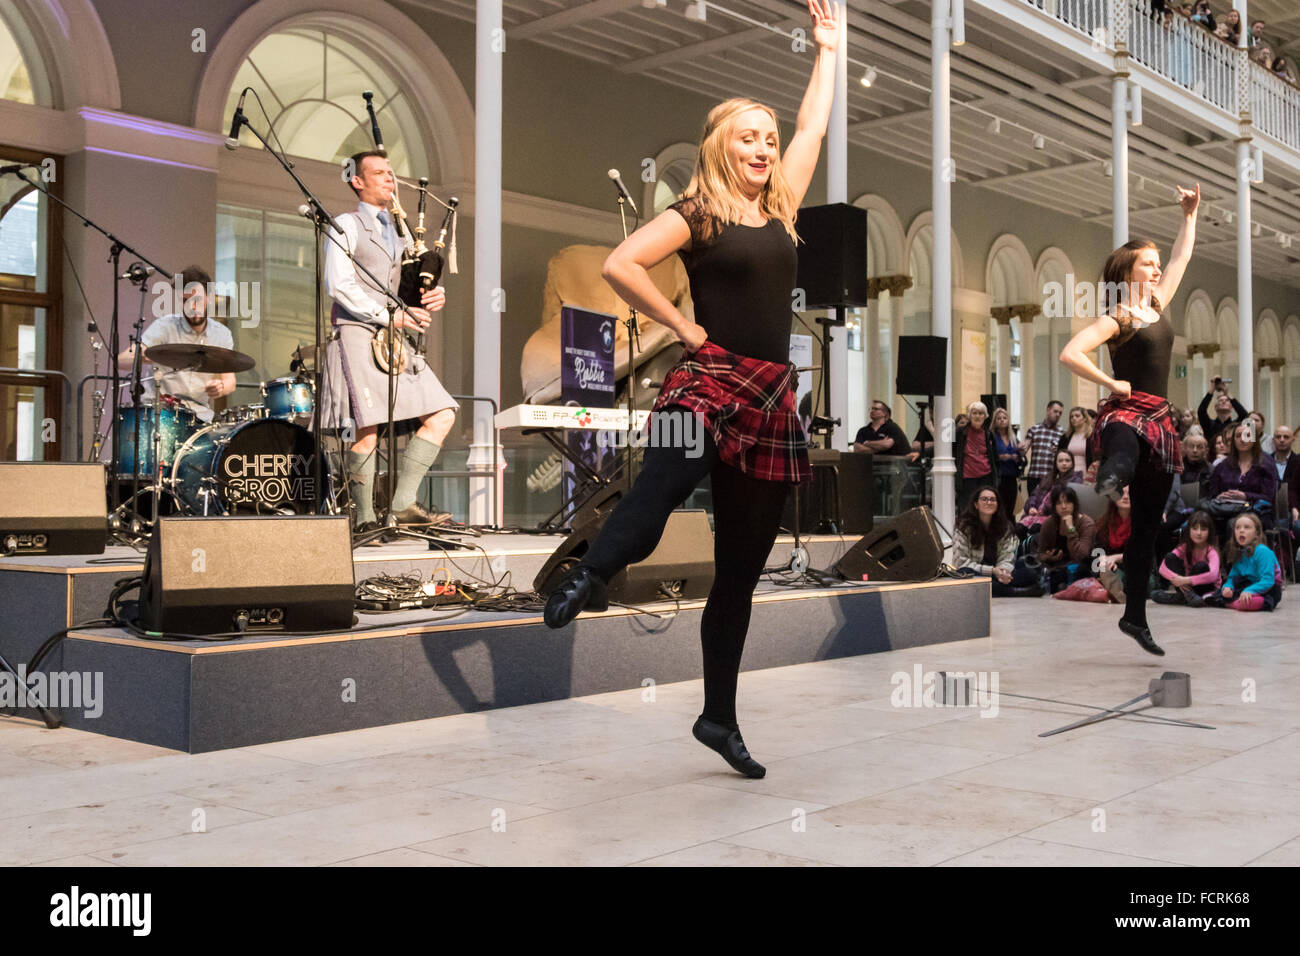 Edimbourg, Ecosse. 24 janvier 2016. Burns, événement non lié à l'danseurs écossais Scottish National Museum, Chambers Street, Édimbourg. Credit : Tracey Largue/Alamy Live News Banque D'Images